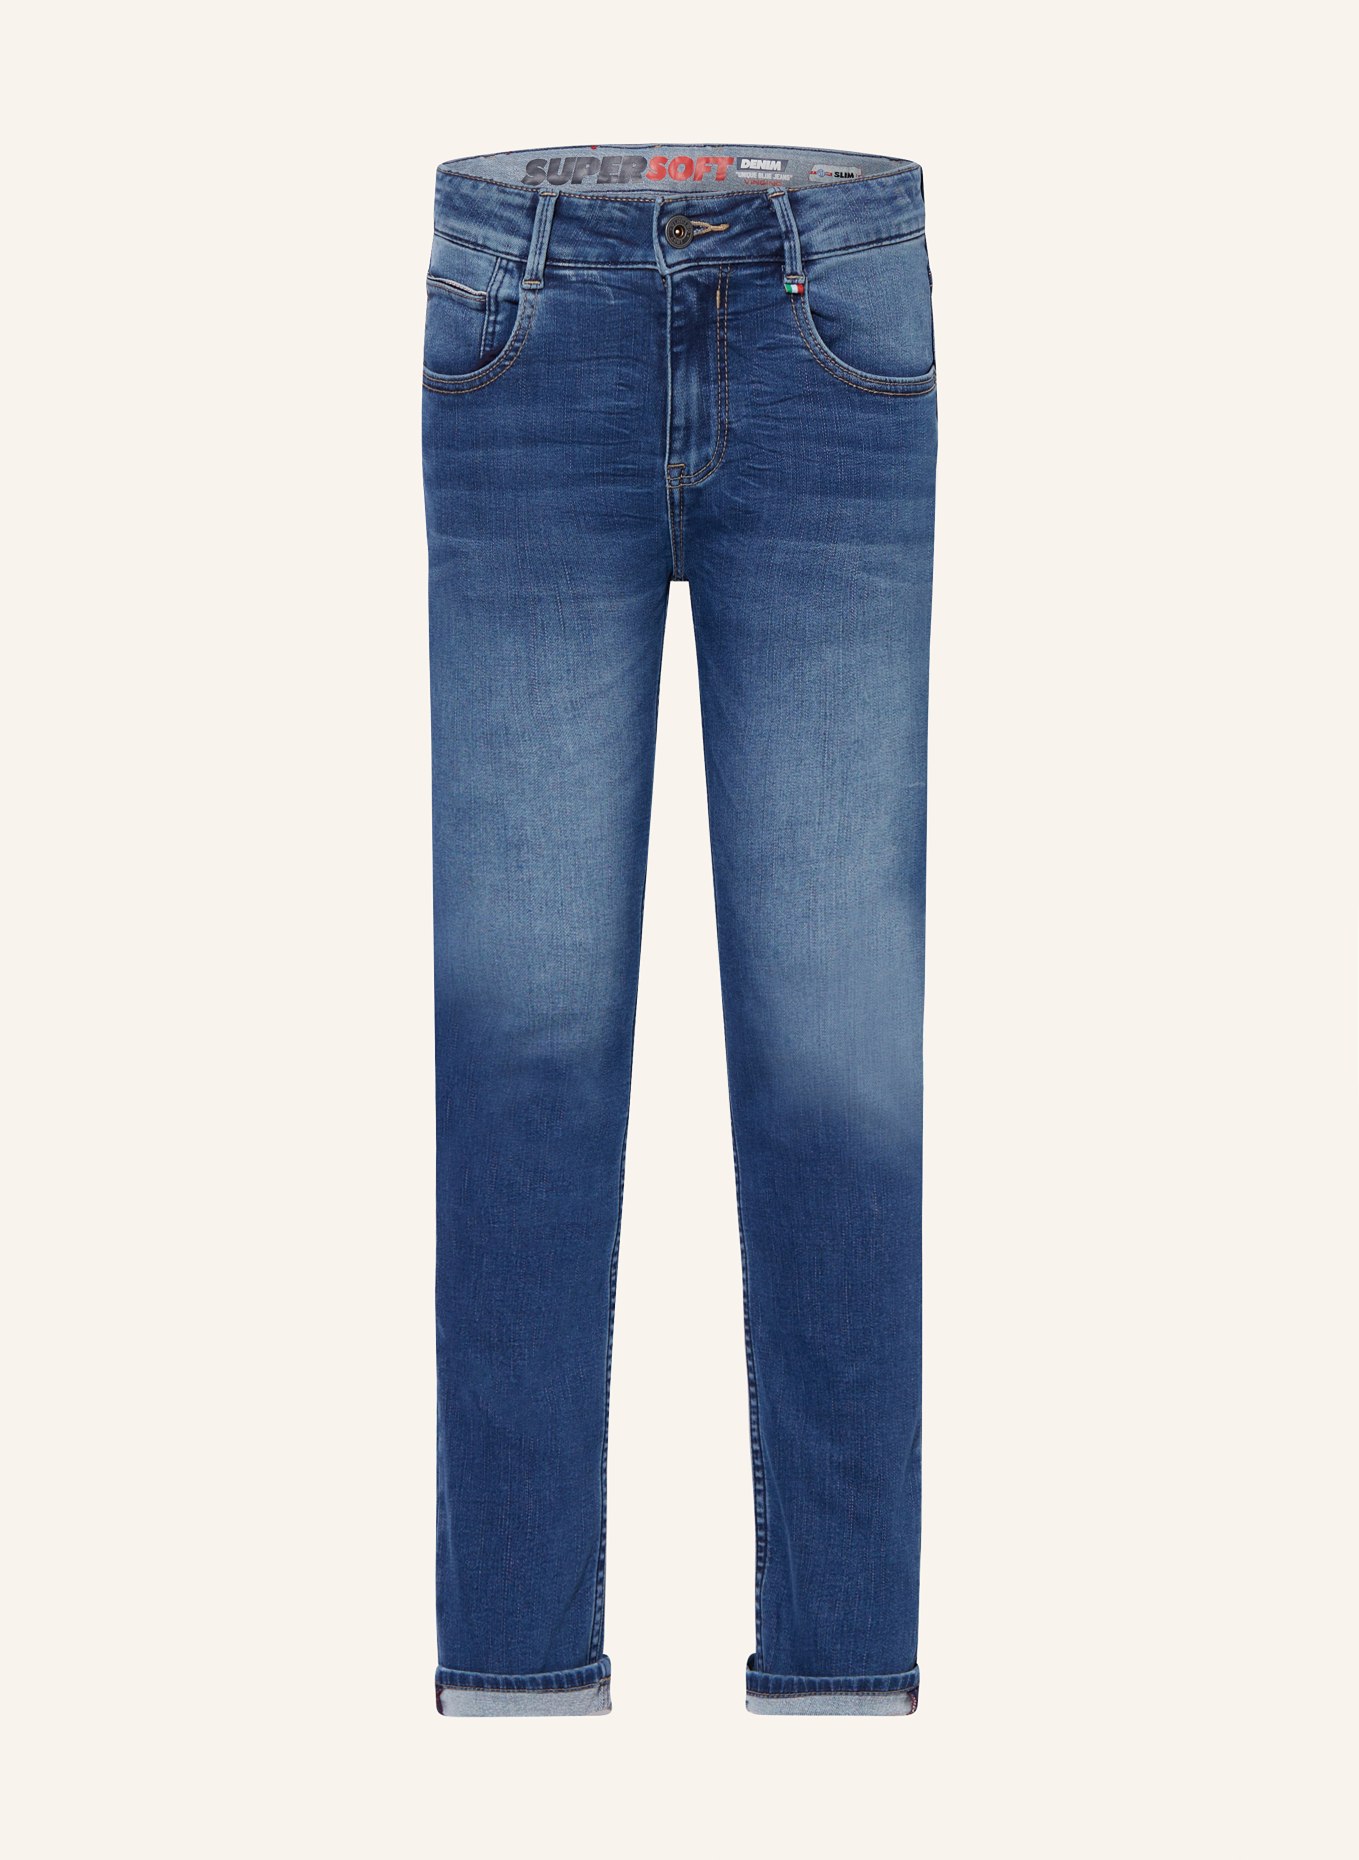 VINGINO Jeans DAVIDE Slim Fit, Farbe: BLAU (Bild 1)